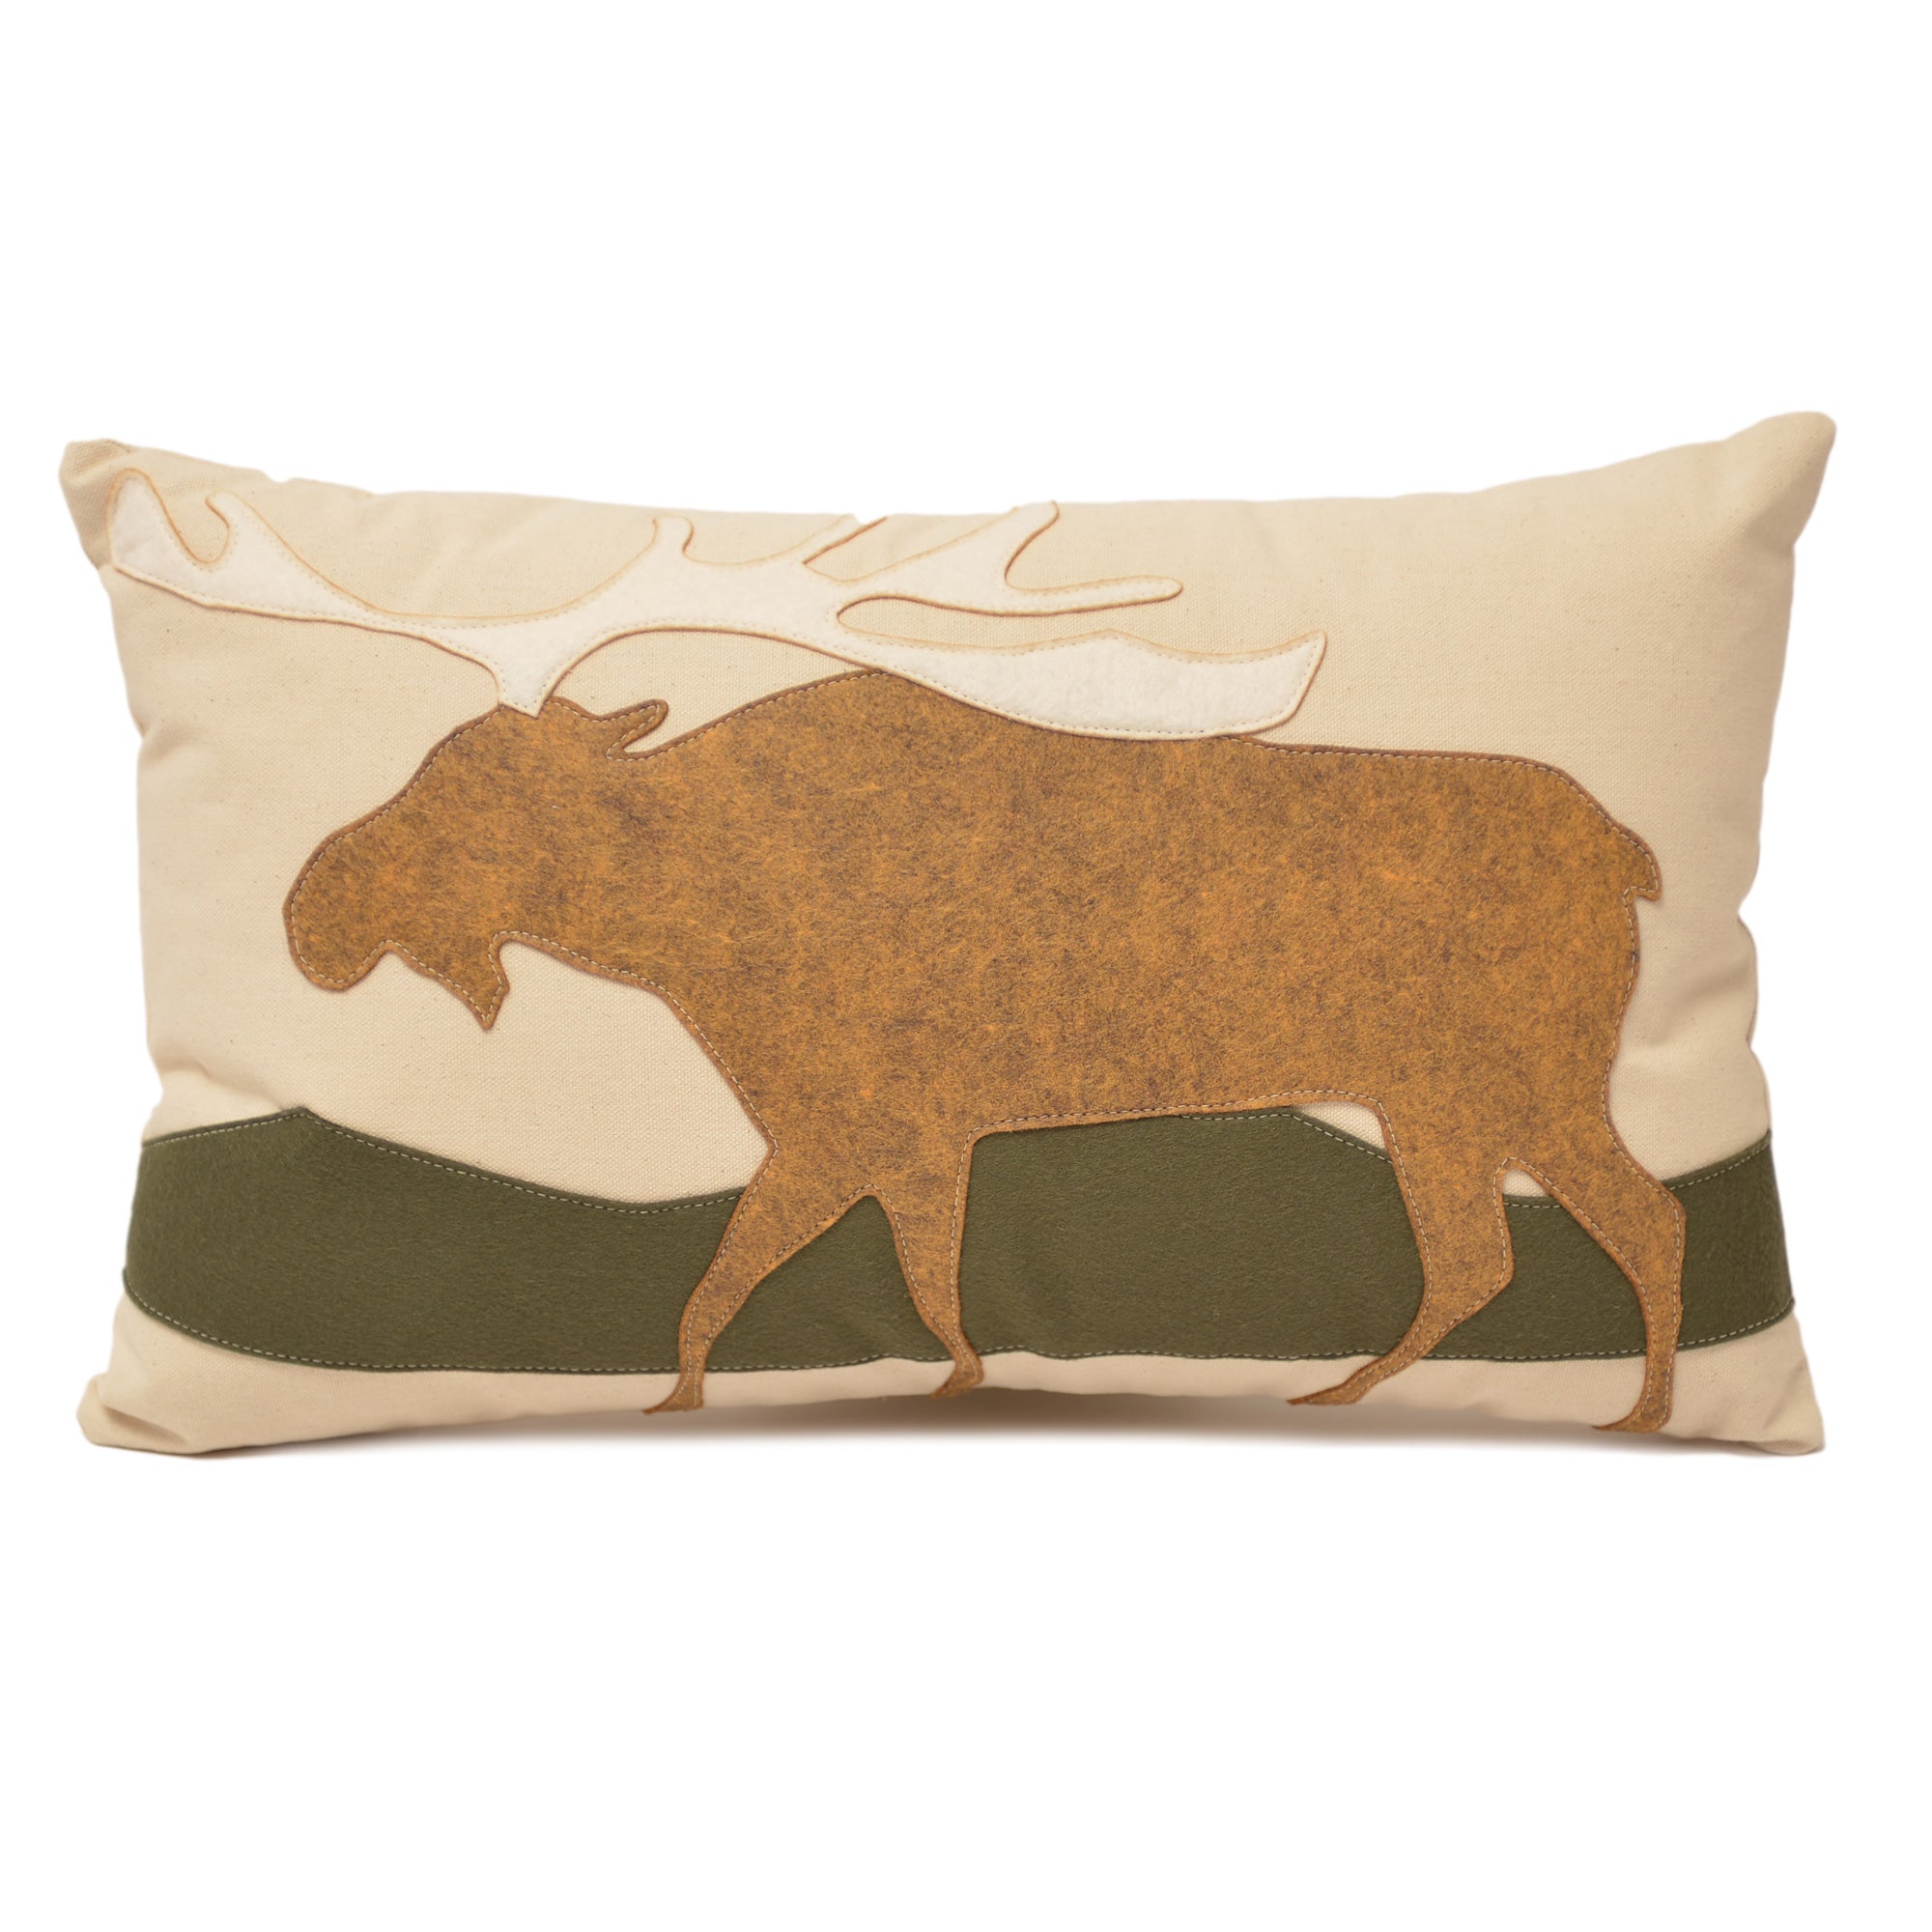 14X21" Moose Lumbar Pillow